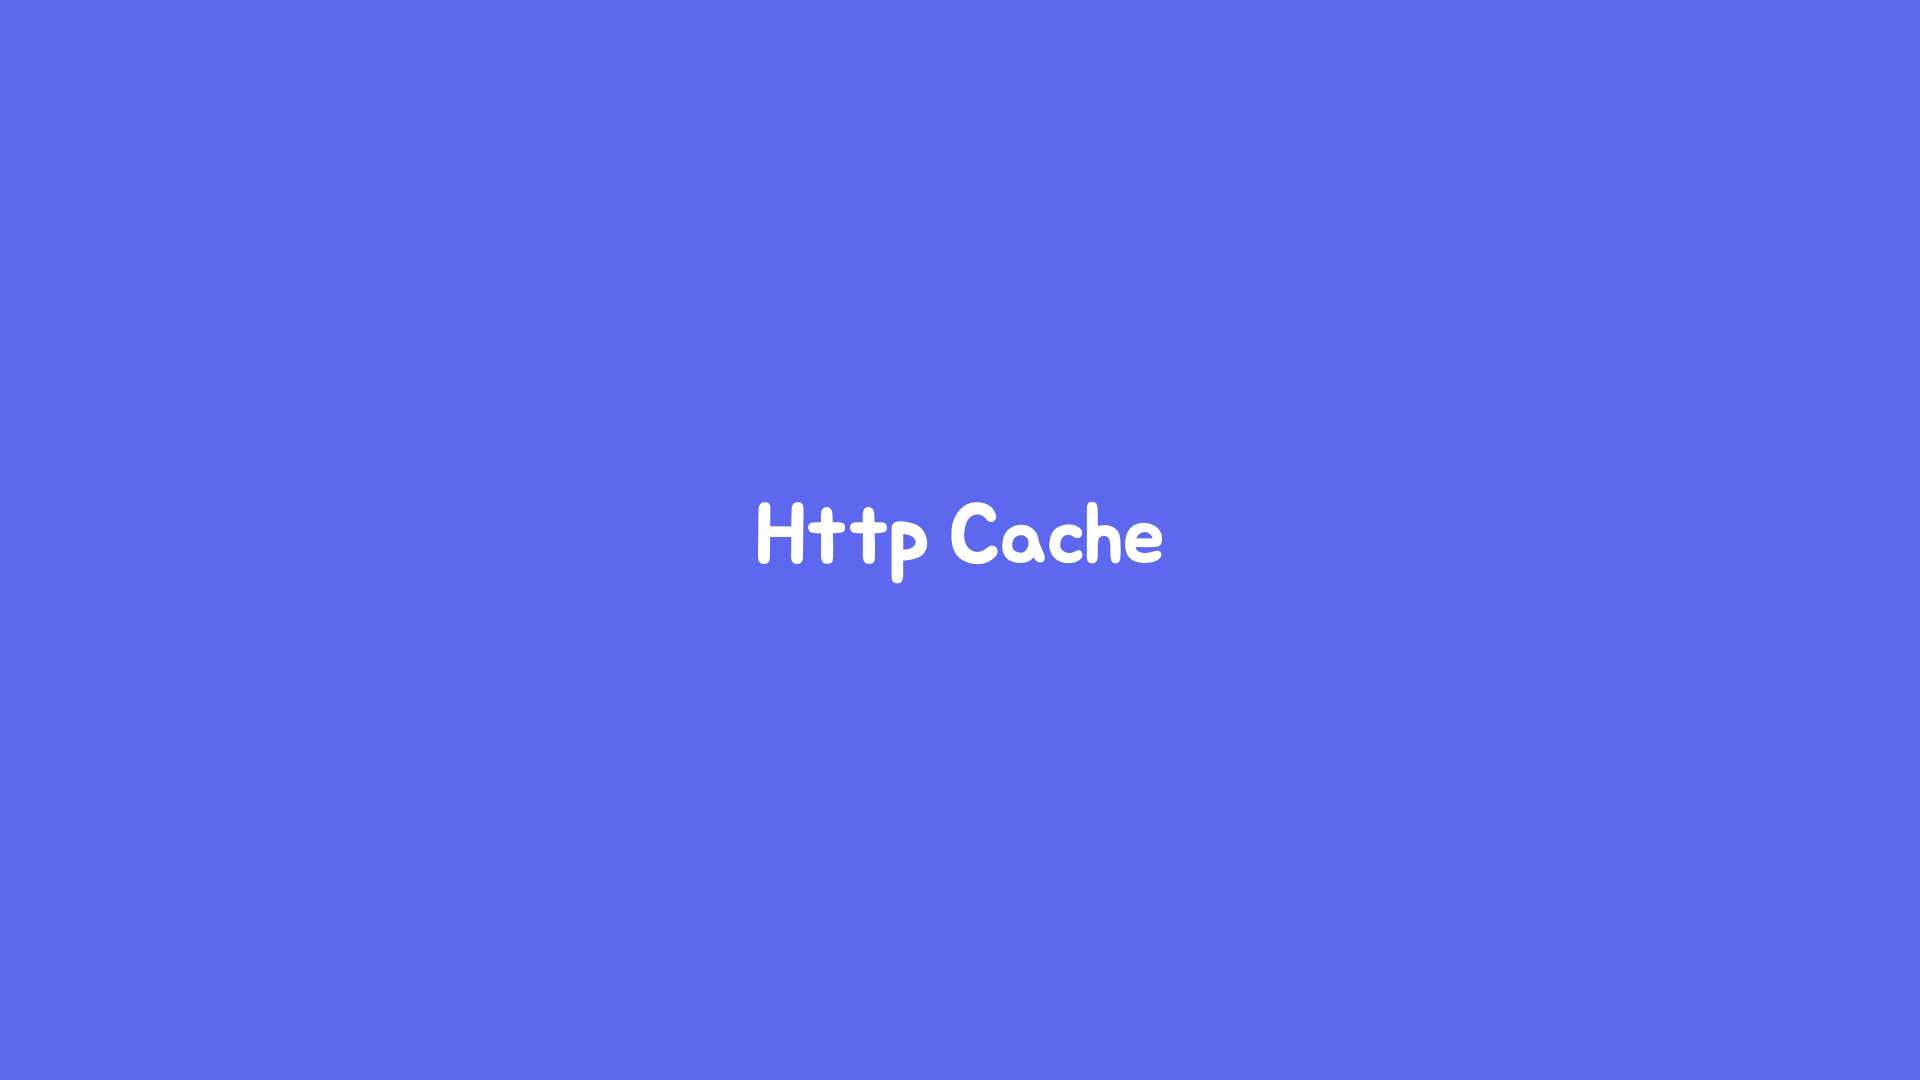 HTTP Cache 히어로 이미지